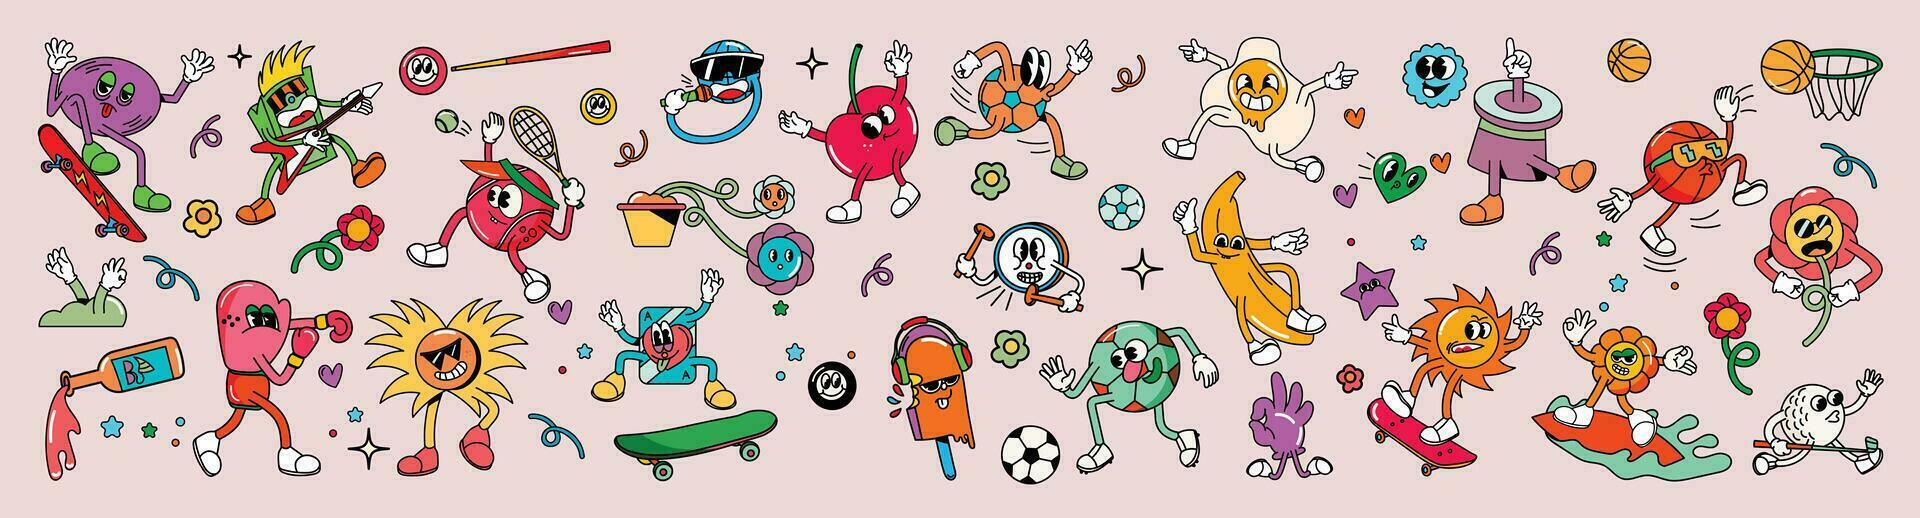 mega reeks van jaren 70 groovy element vector. verzameling van tekenfilm karakters, tekening glimlach gezicht, boksen, zon, skateboard, banaan, bloem, Amerikaans voetbal. schattig retro groovy hippie ontwerp voor decoratief, sticker. vector